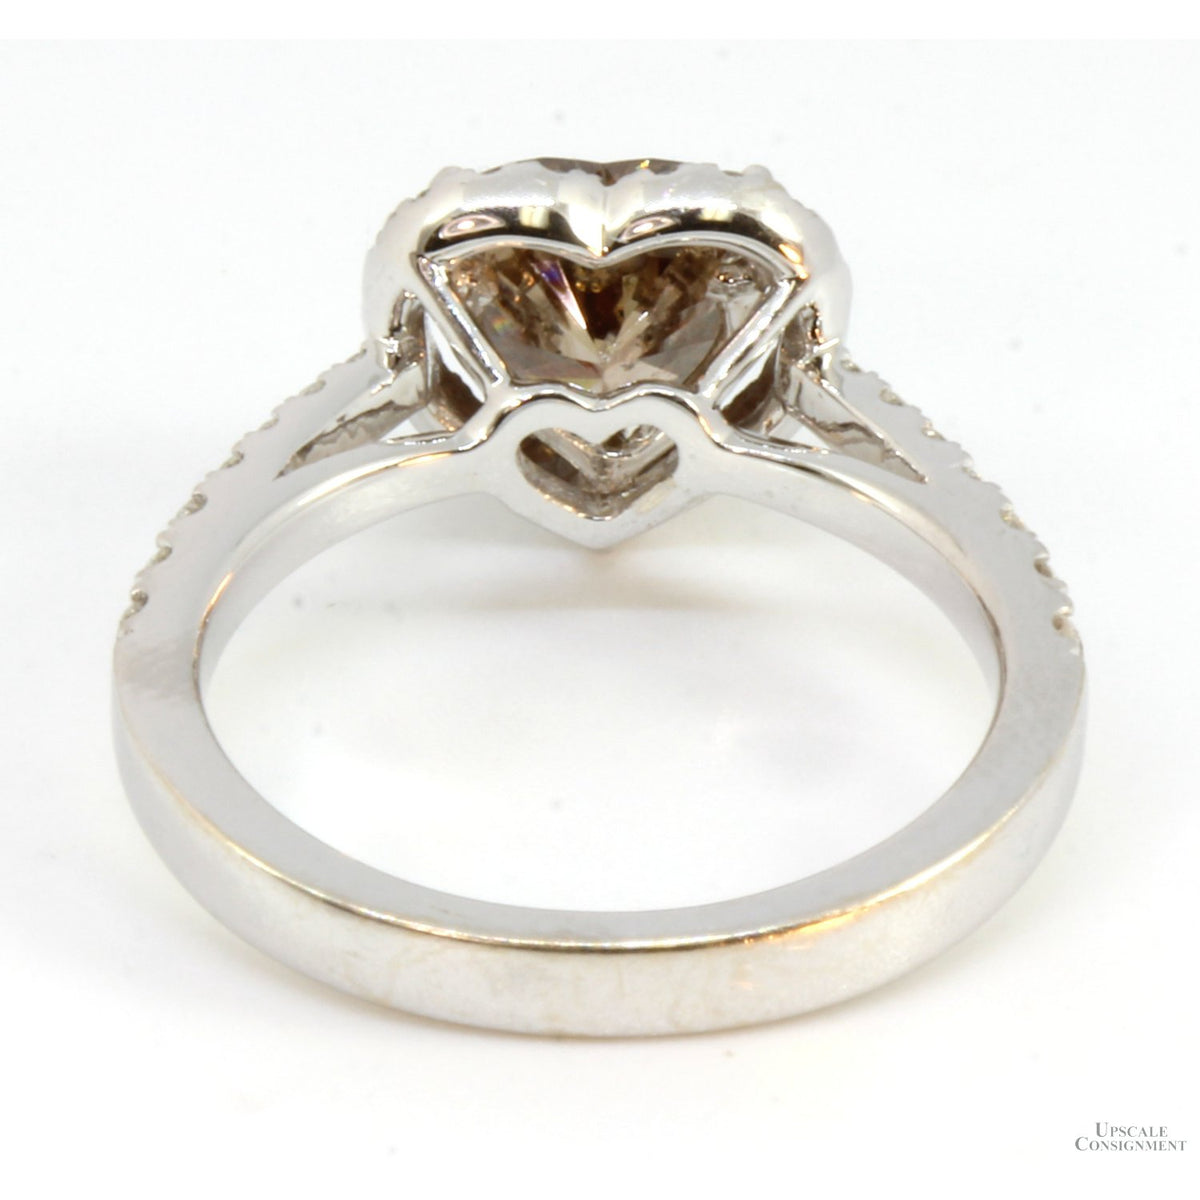 18K Gold 2.12ctw Diamond Ring w/1.72ct Fancy Brown Heart Shape Diamond